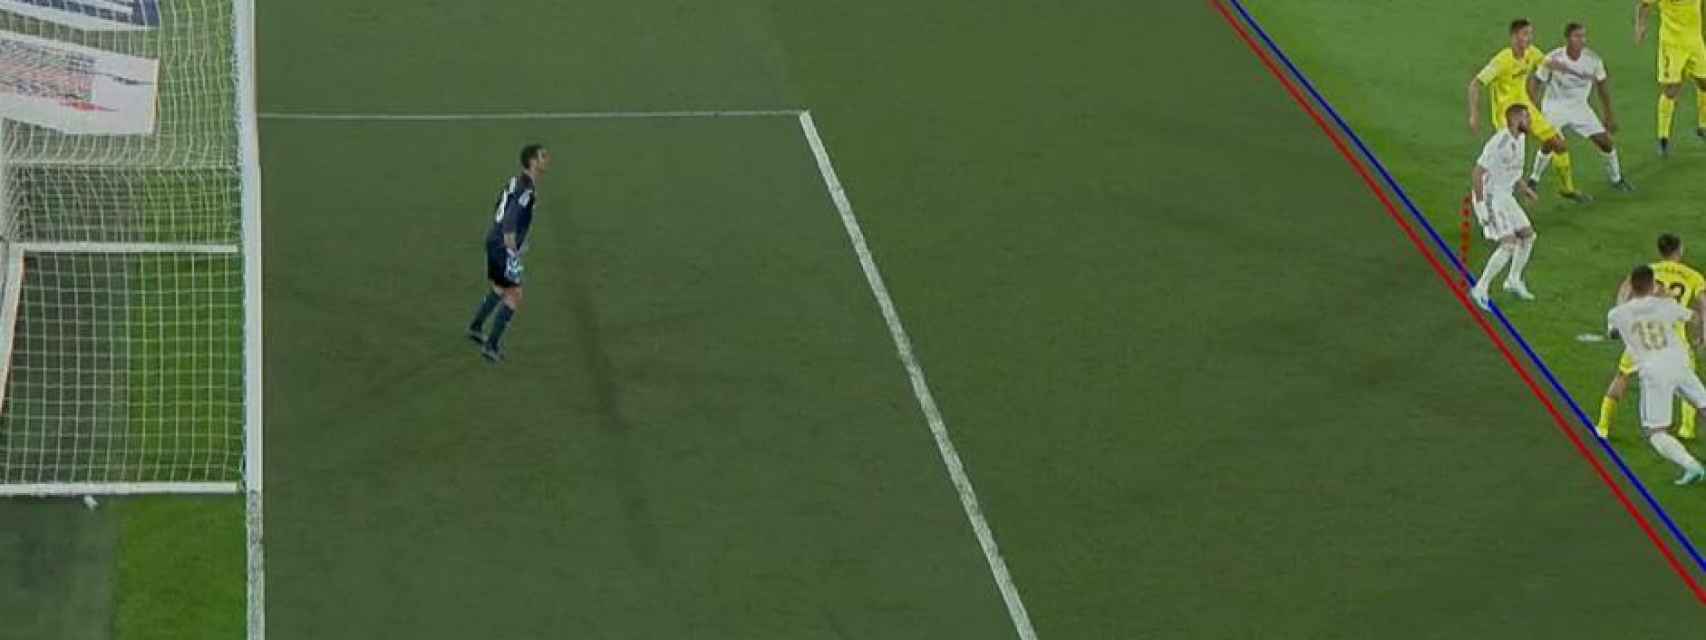 Fuera de juego de Benzema en el Villarreal - Real Madrid de la jornada 3 de La Liga